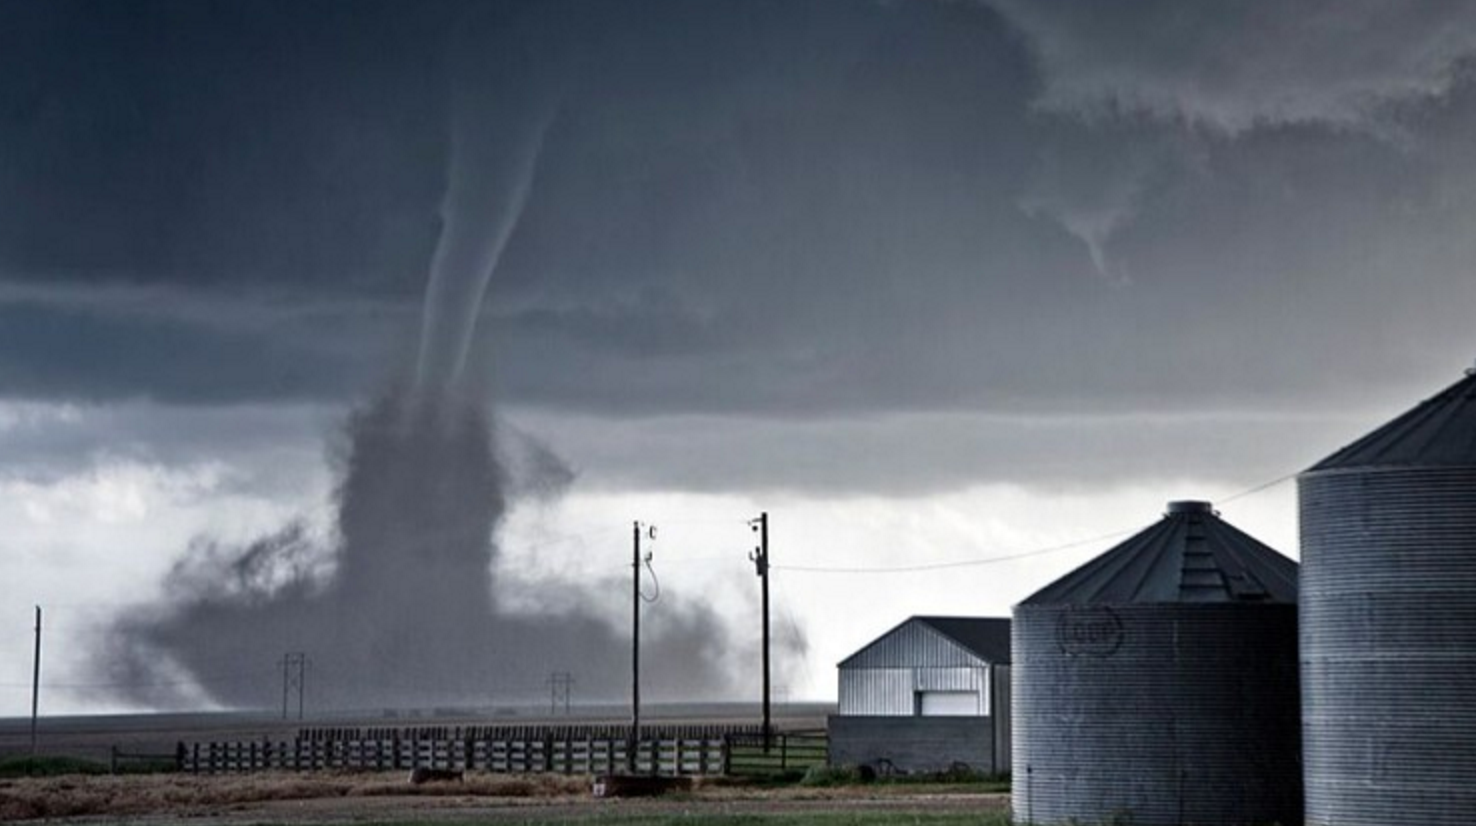 Impresionantes Imágenes De Grandes Tornados En Texas Causando Destrozo A Su Paso